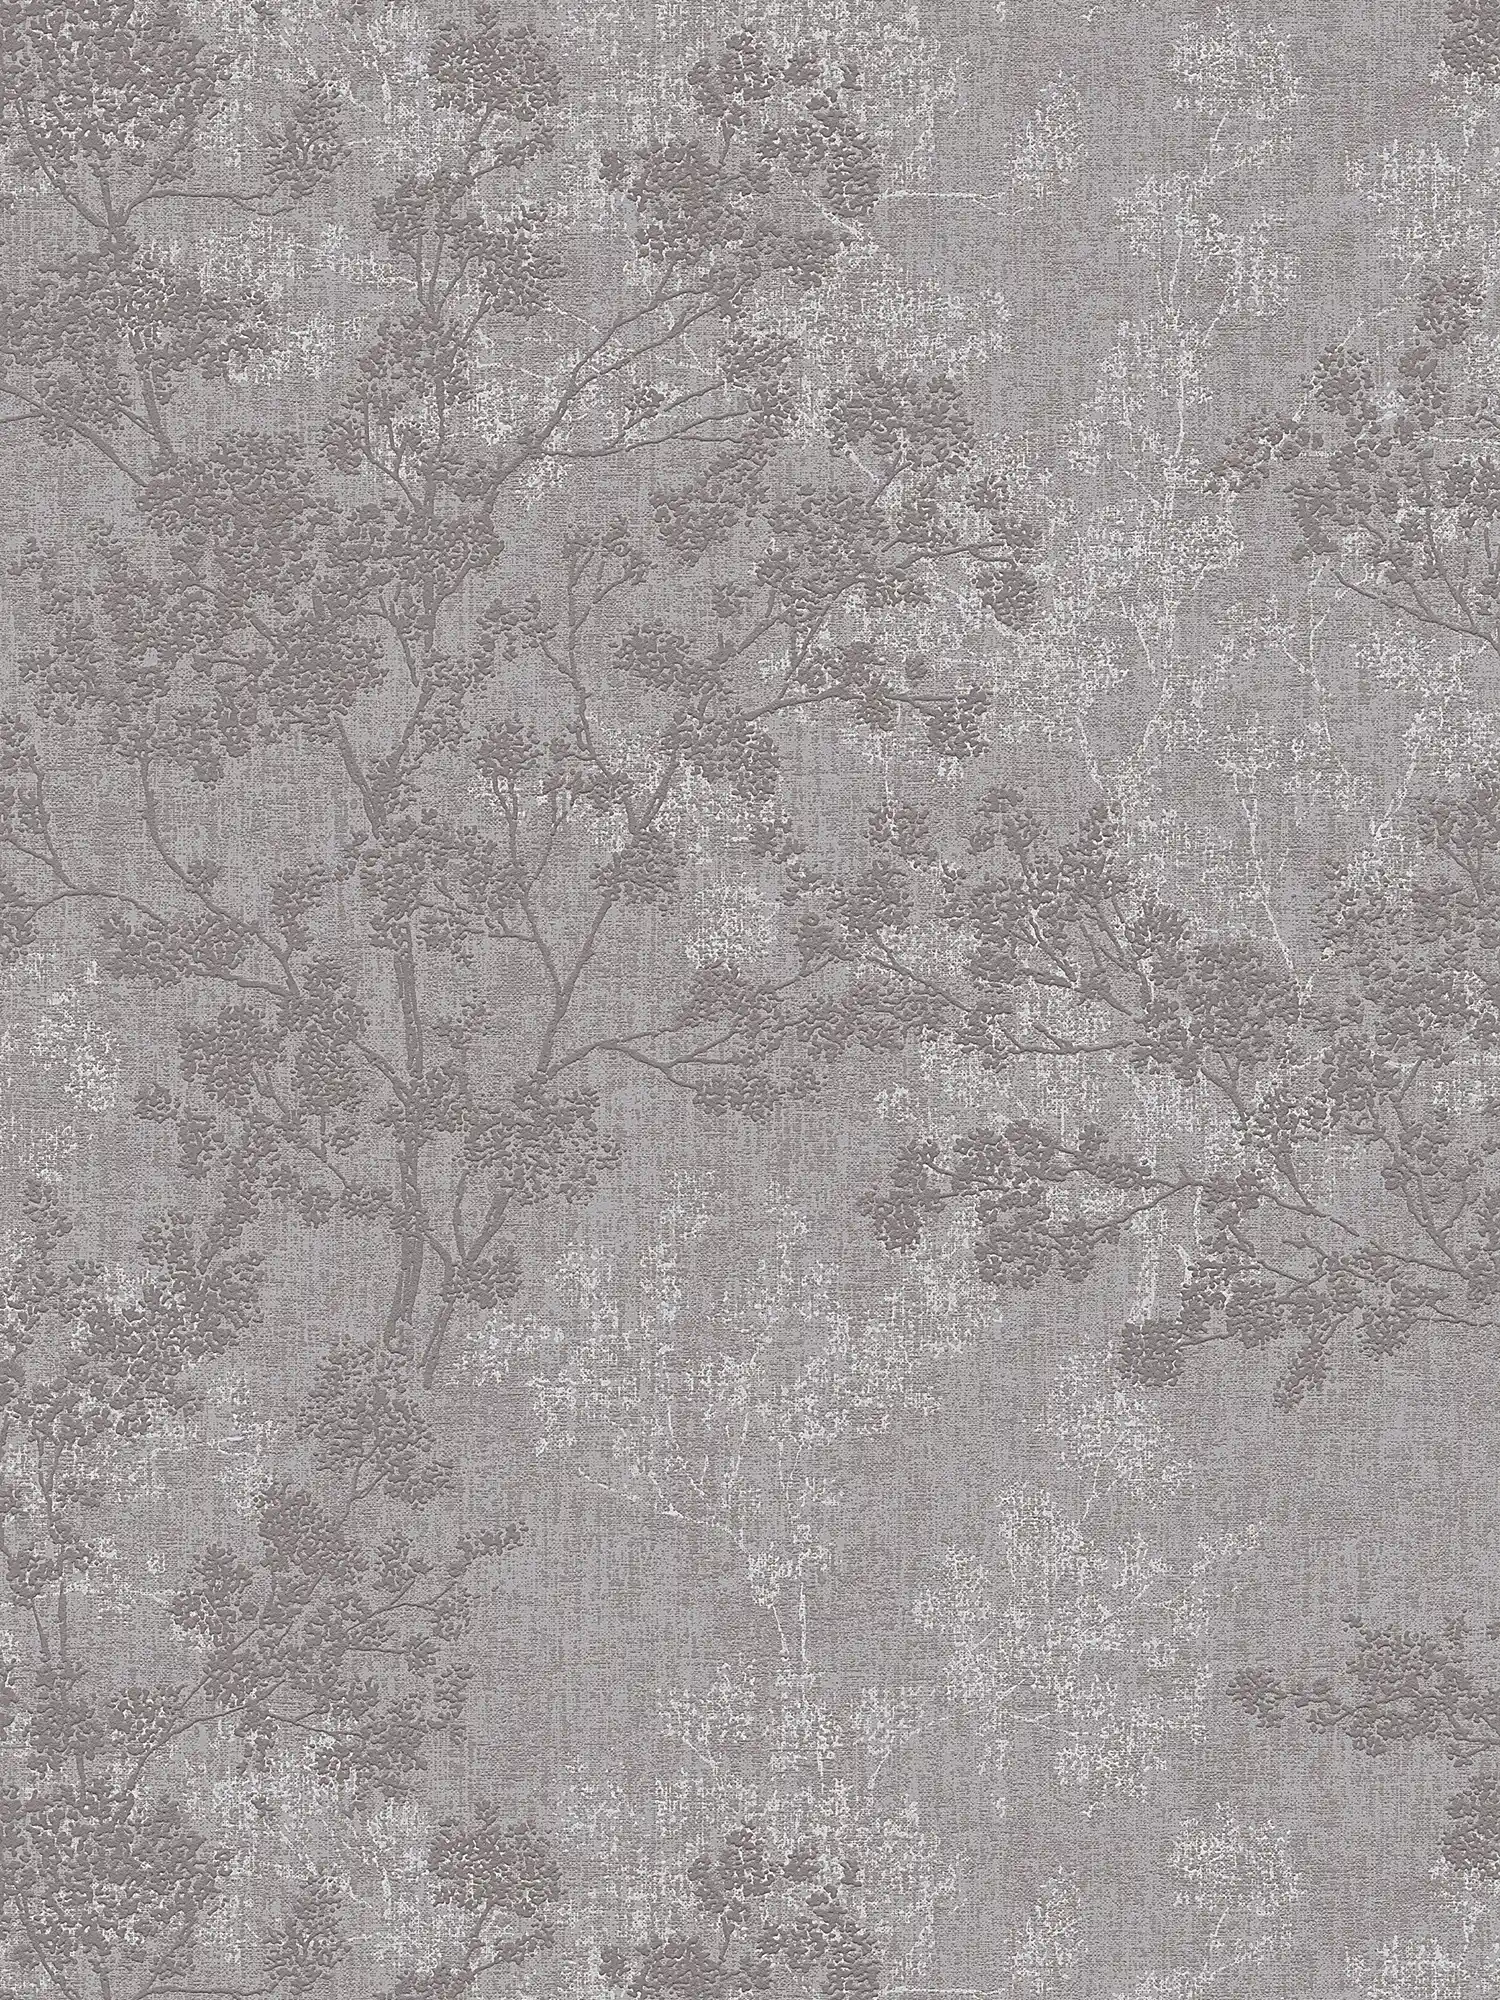 behang bladeren patroon in linnen look - grijs, bruin
